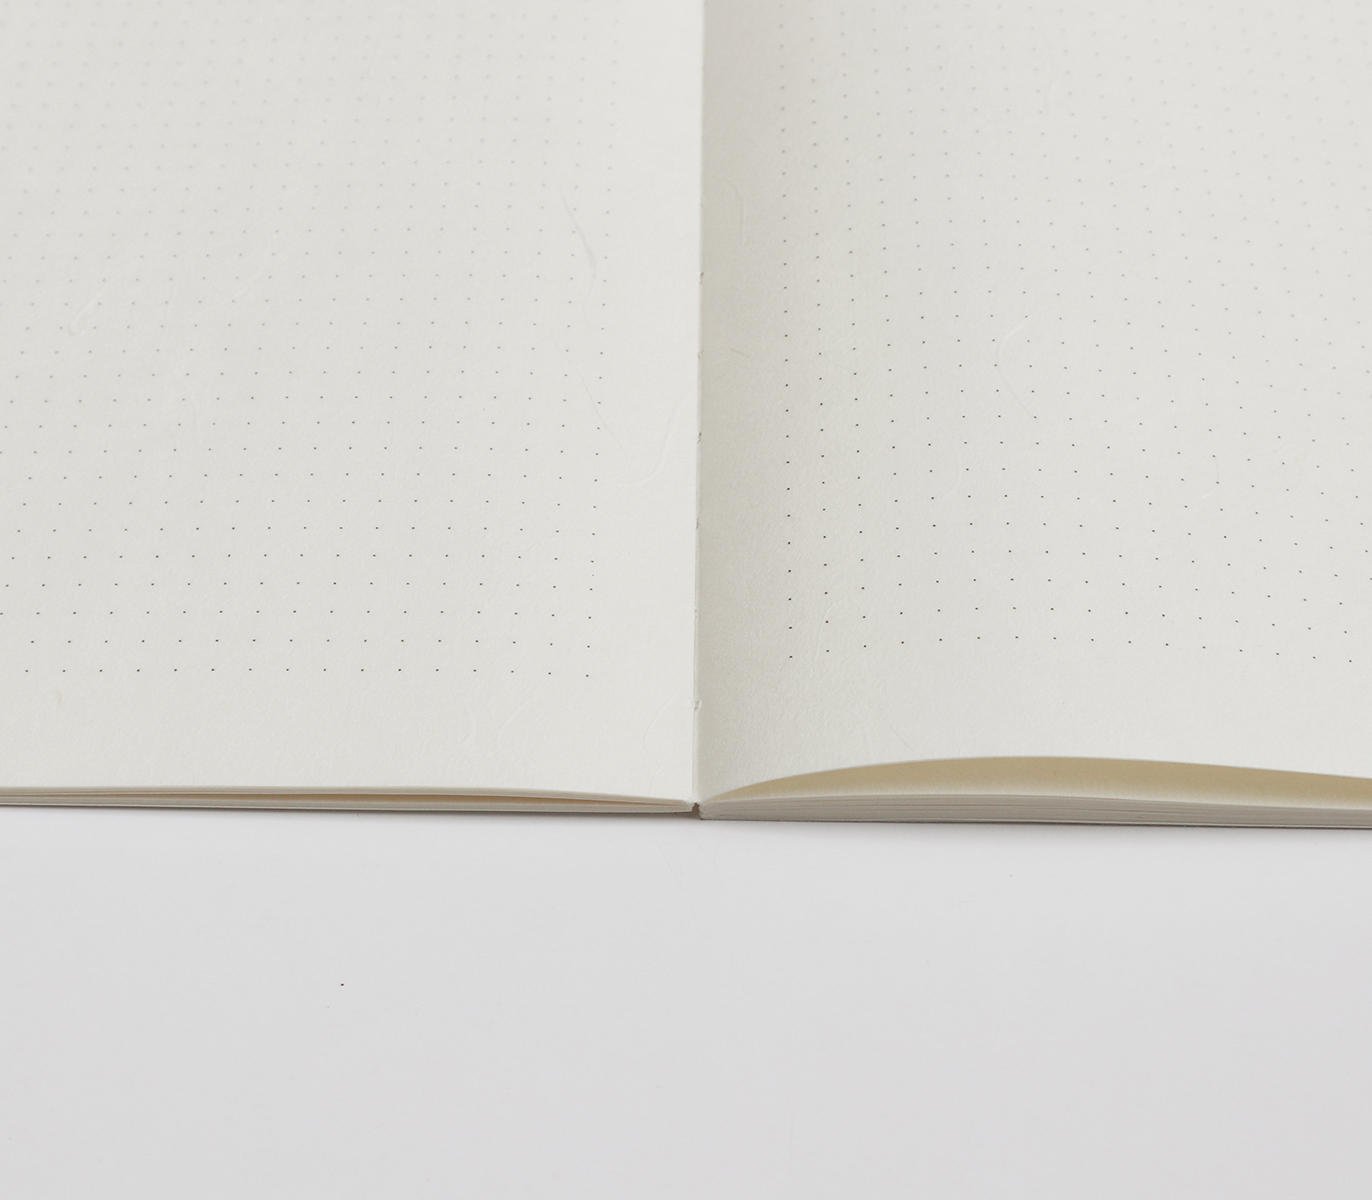 Hanji Cabinet Notebook: A5 Pink Dot Grid